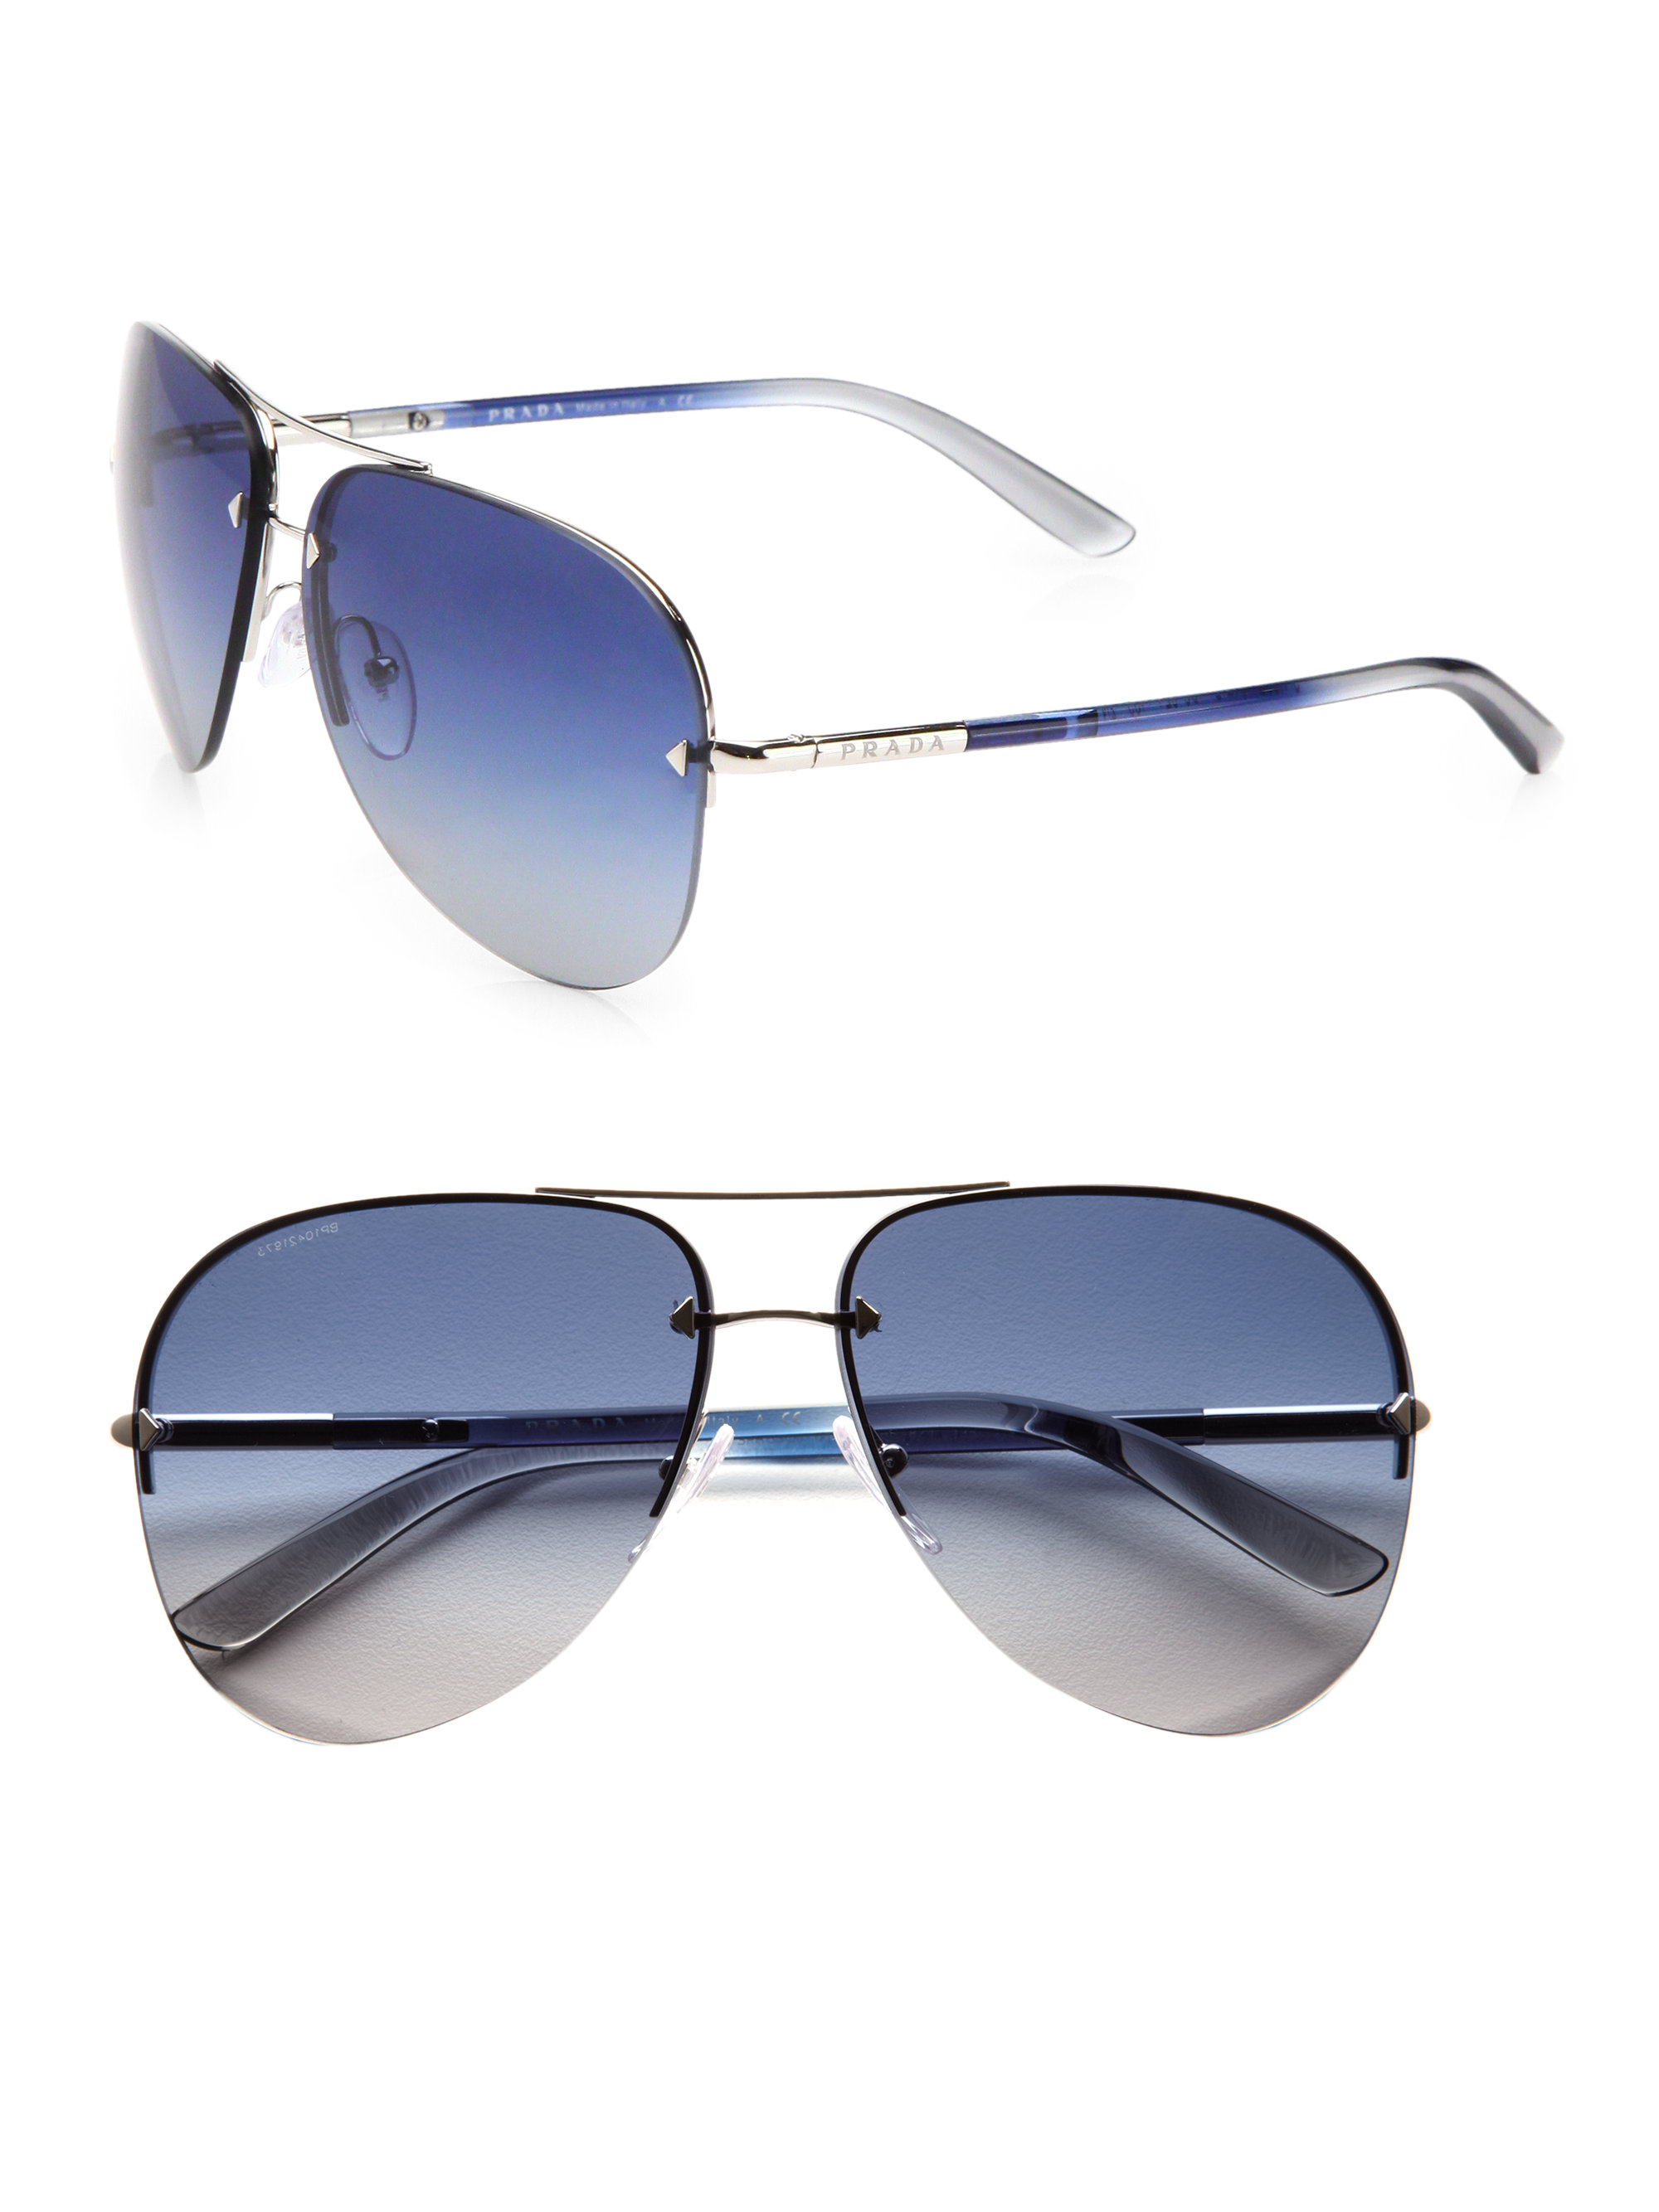 prada mens sunglasses blue, OFF 73%,www 